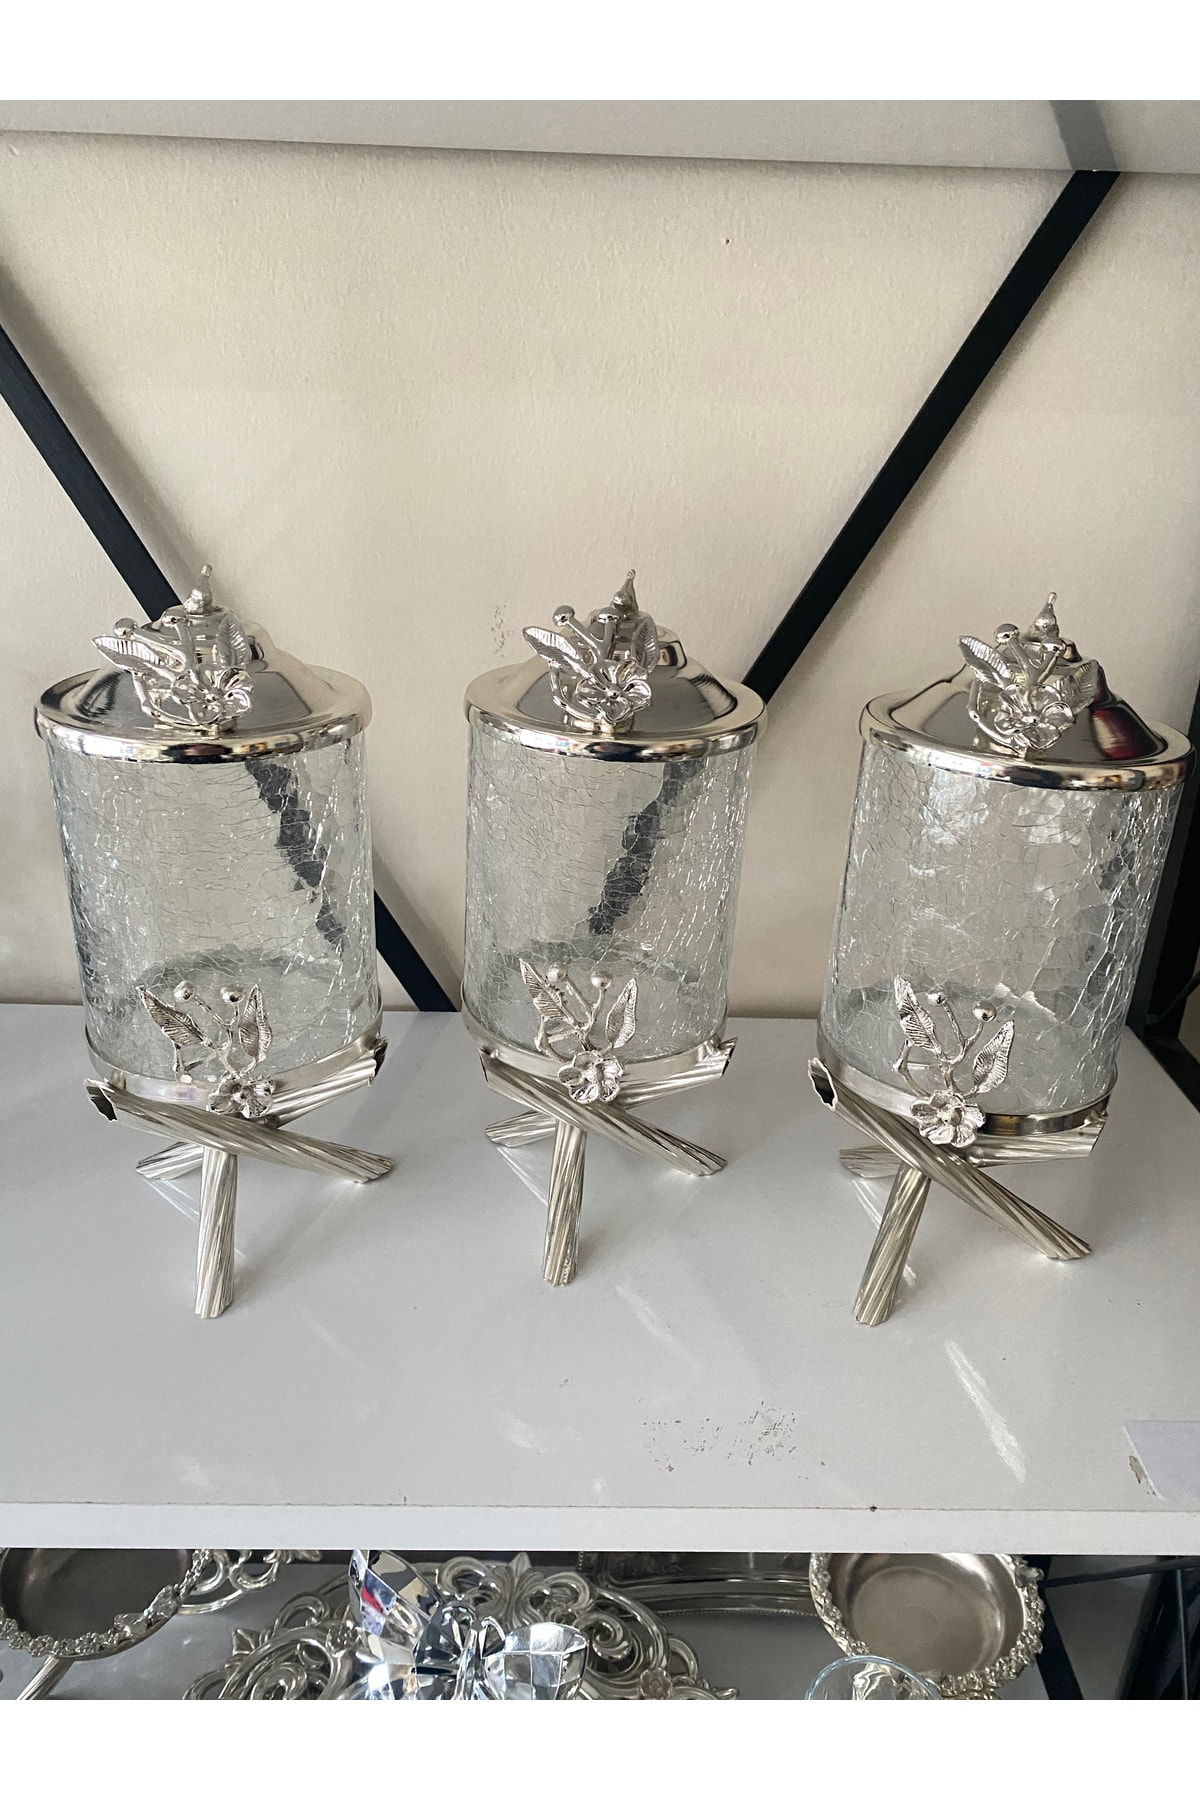 İmren Collection Japon Güllü 3’lü Kavanoz Seti Gümüş Renk